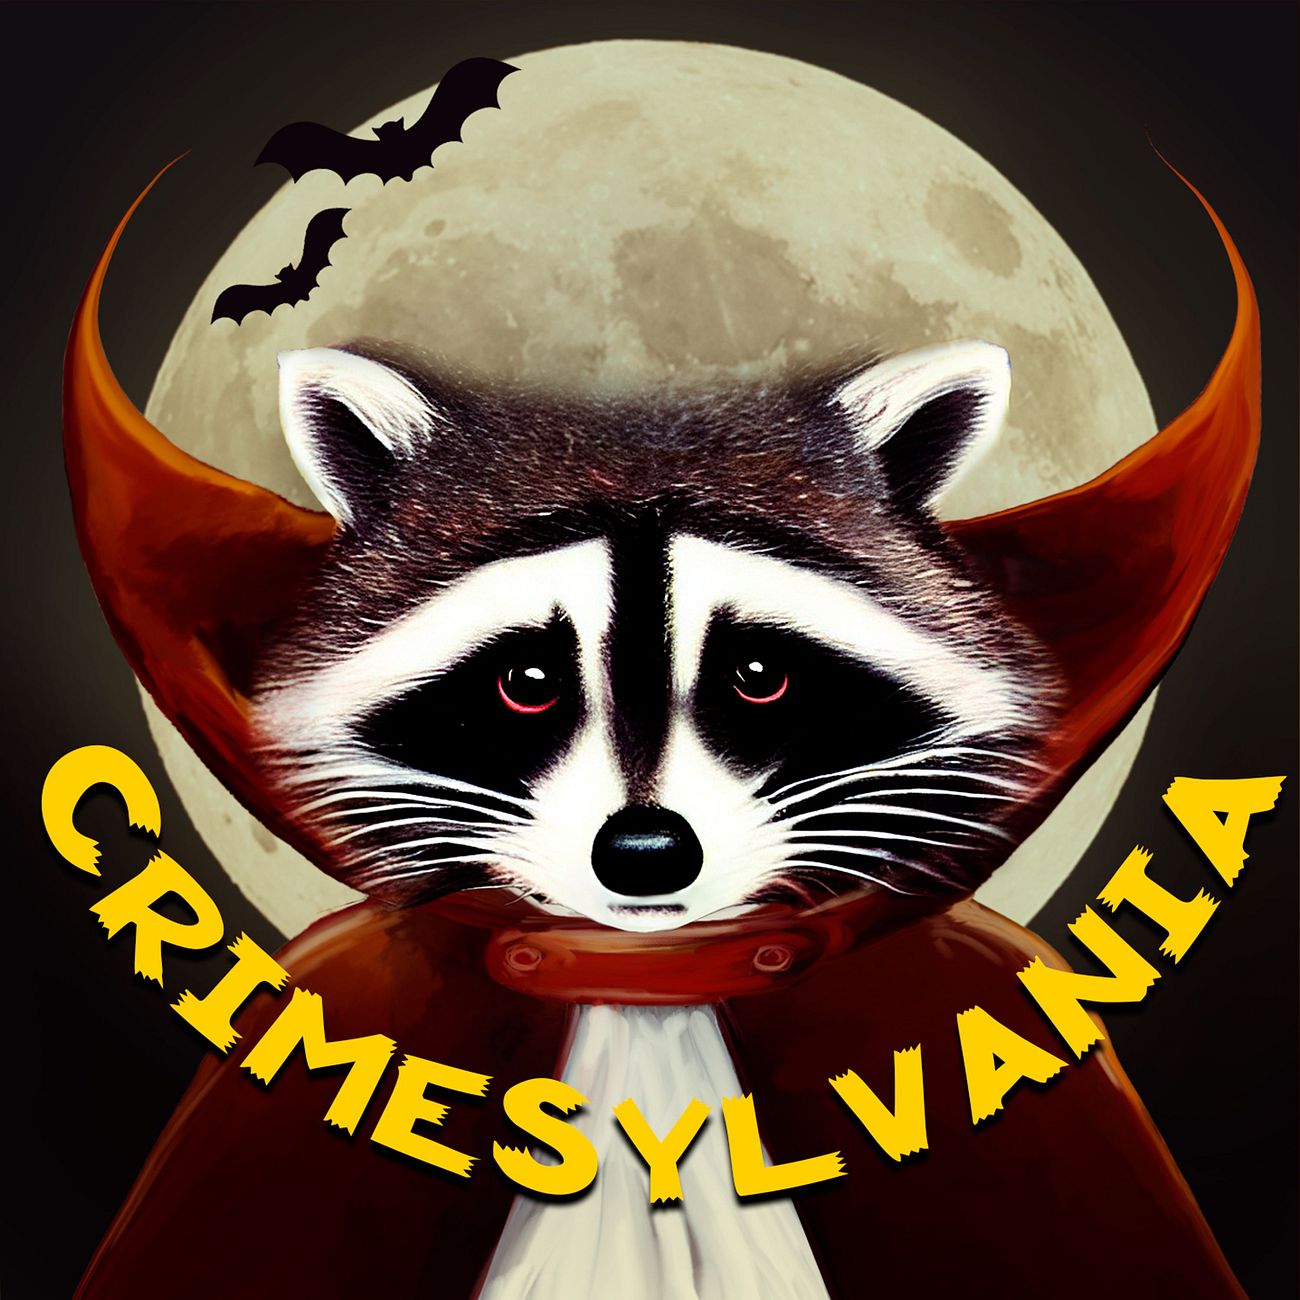 CrimeSylvania